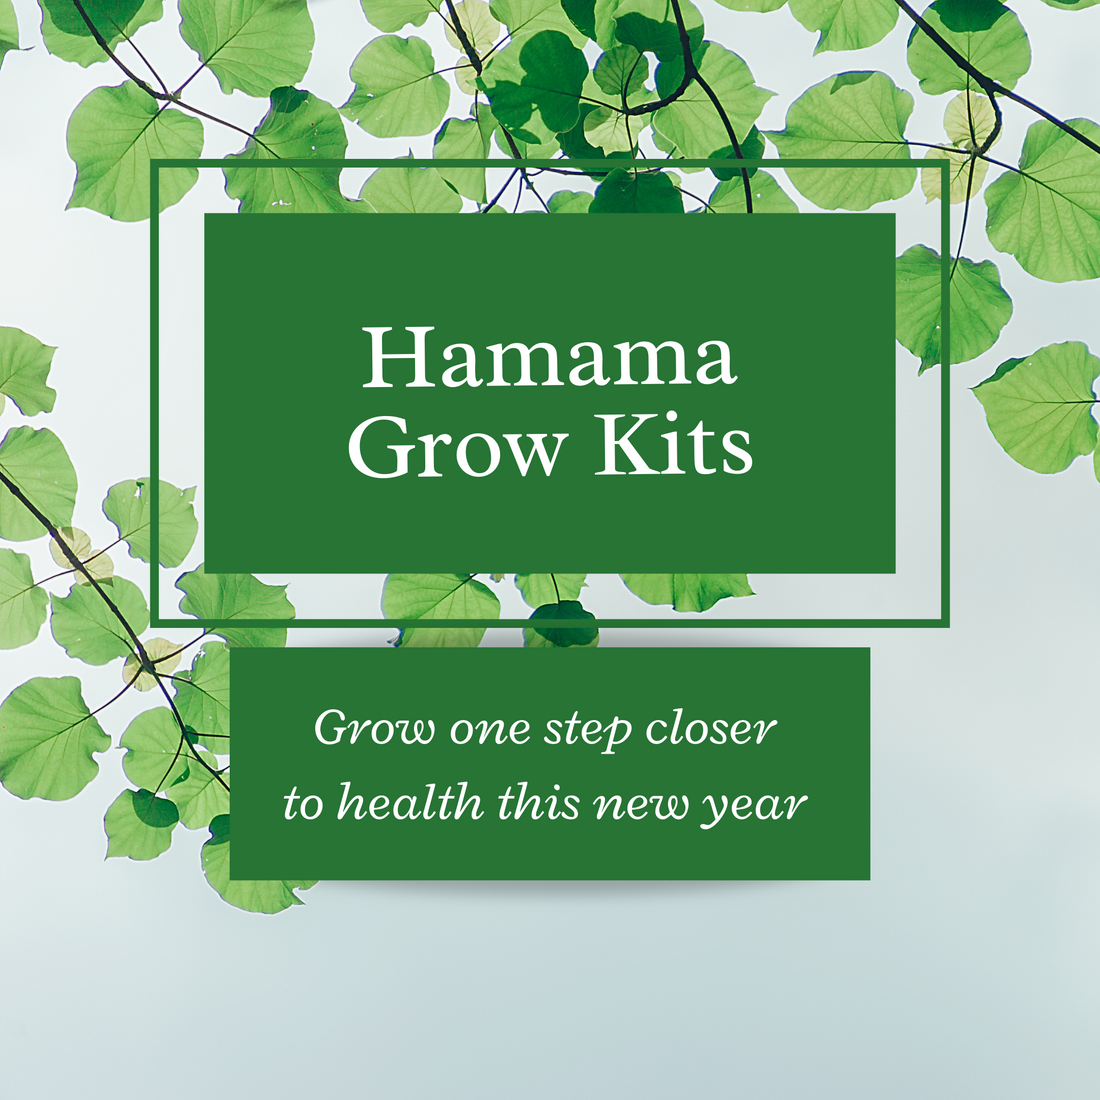 Get Your Hamama Grow Kit!